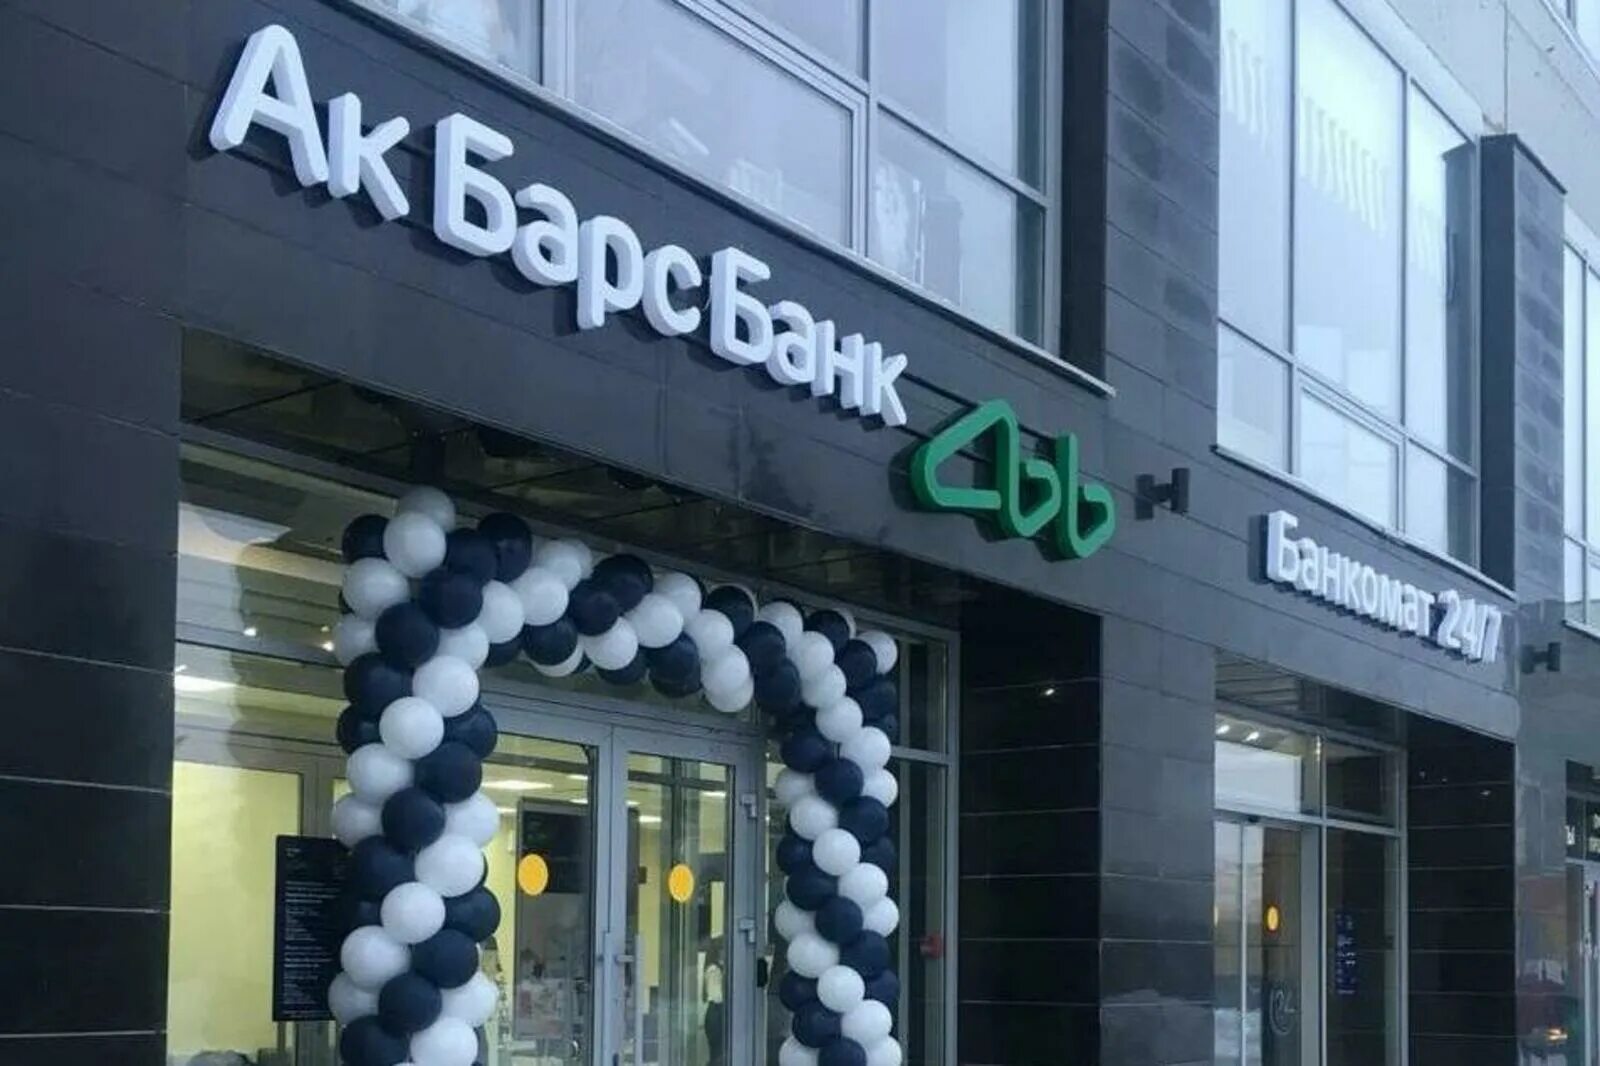 Акбарсбанк банк доллар. АК Барс банк офис. АК Барс банк Уфа. АК Барс банк новый офис. Акбарсбанк банк фото.